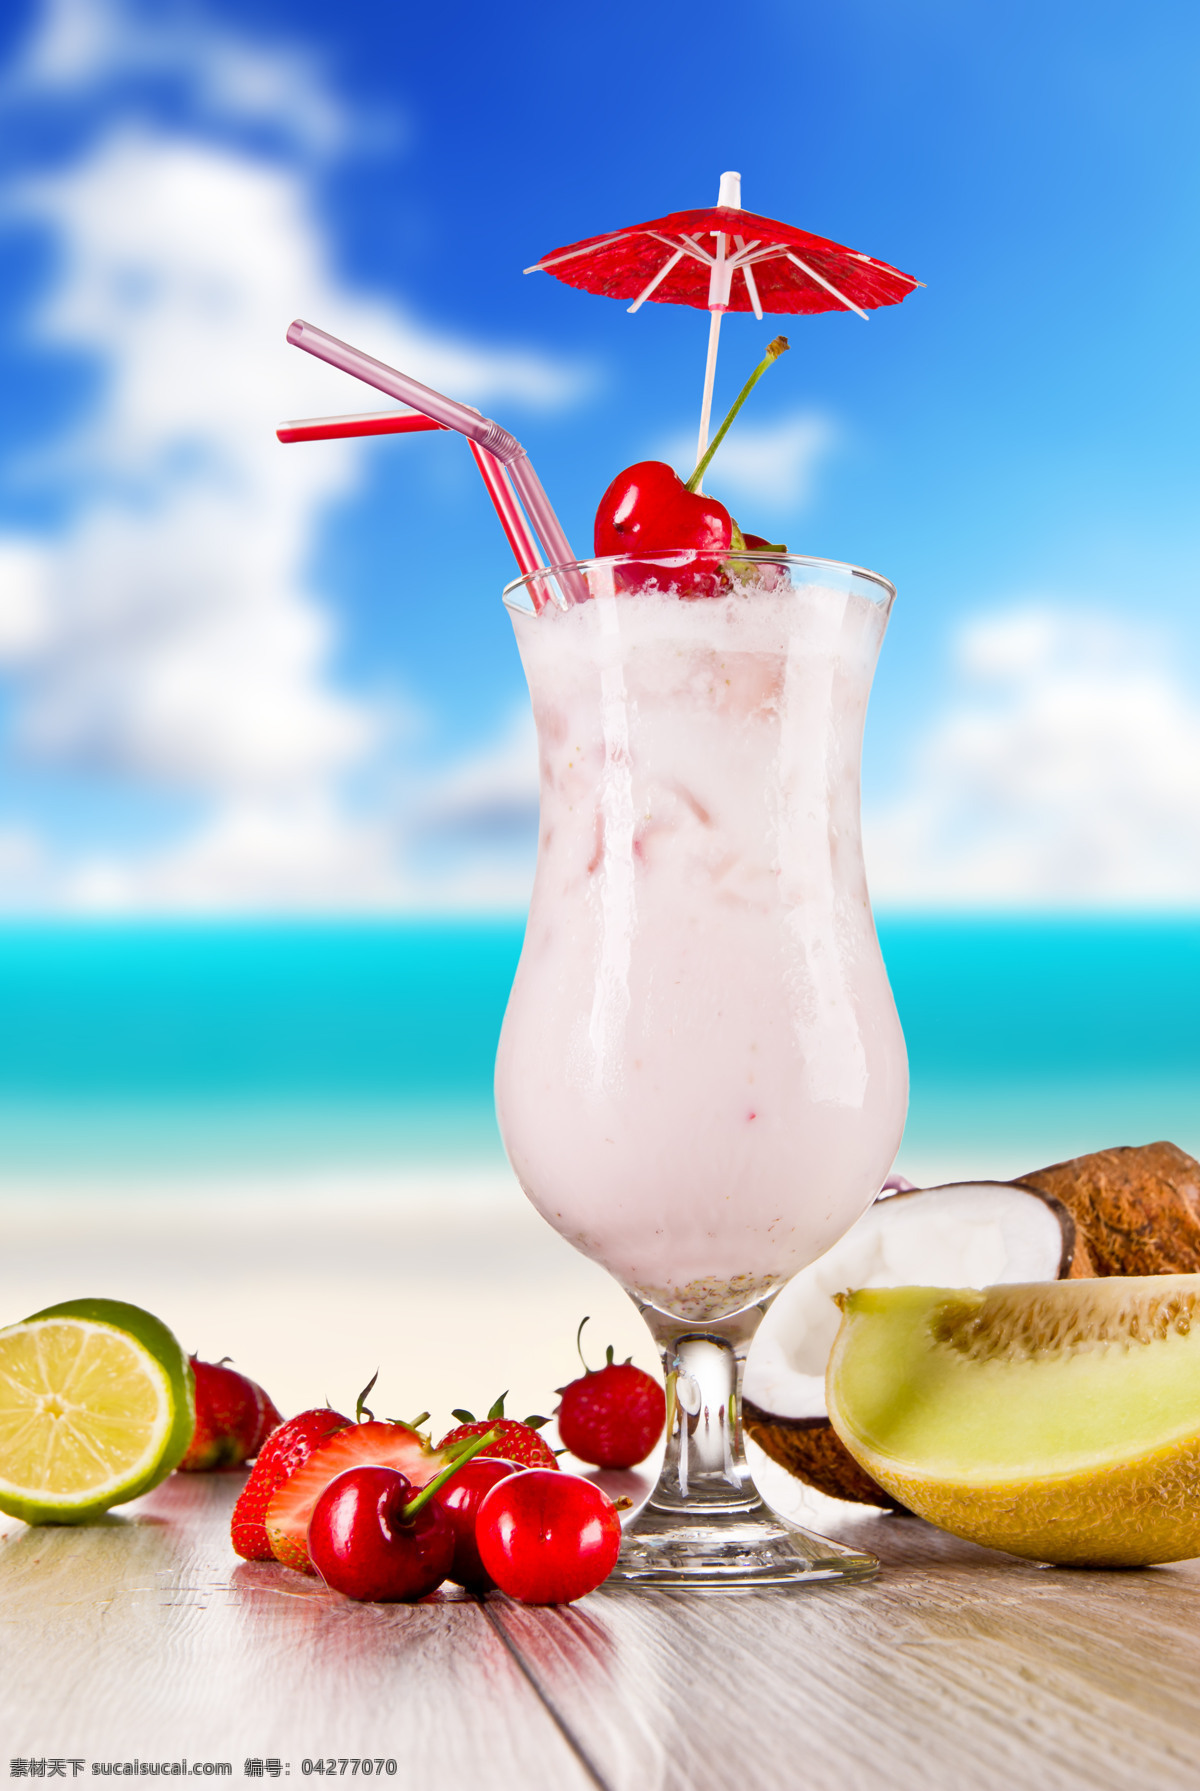 夏日 水果 饮料 饮品 果汁 原味果汁 美味 新鲜 吸管 酒水饮料 草莓 樱桃 海边 木板 蓝天白云 椰汁 饮料图片 餐饮美食